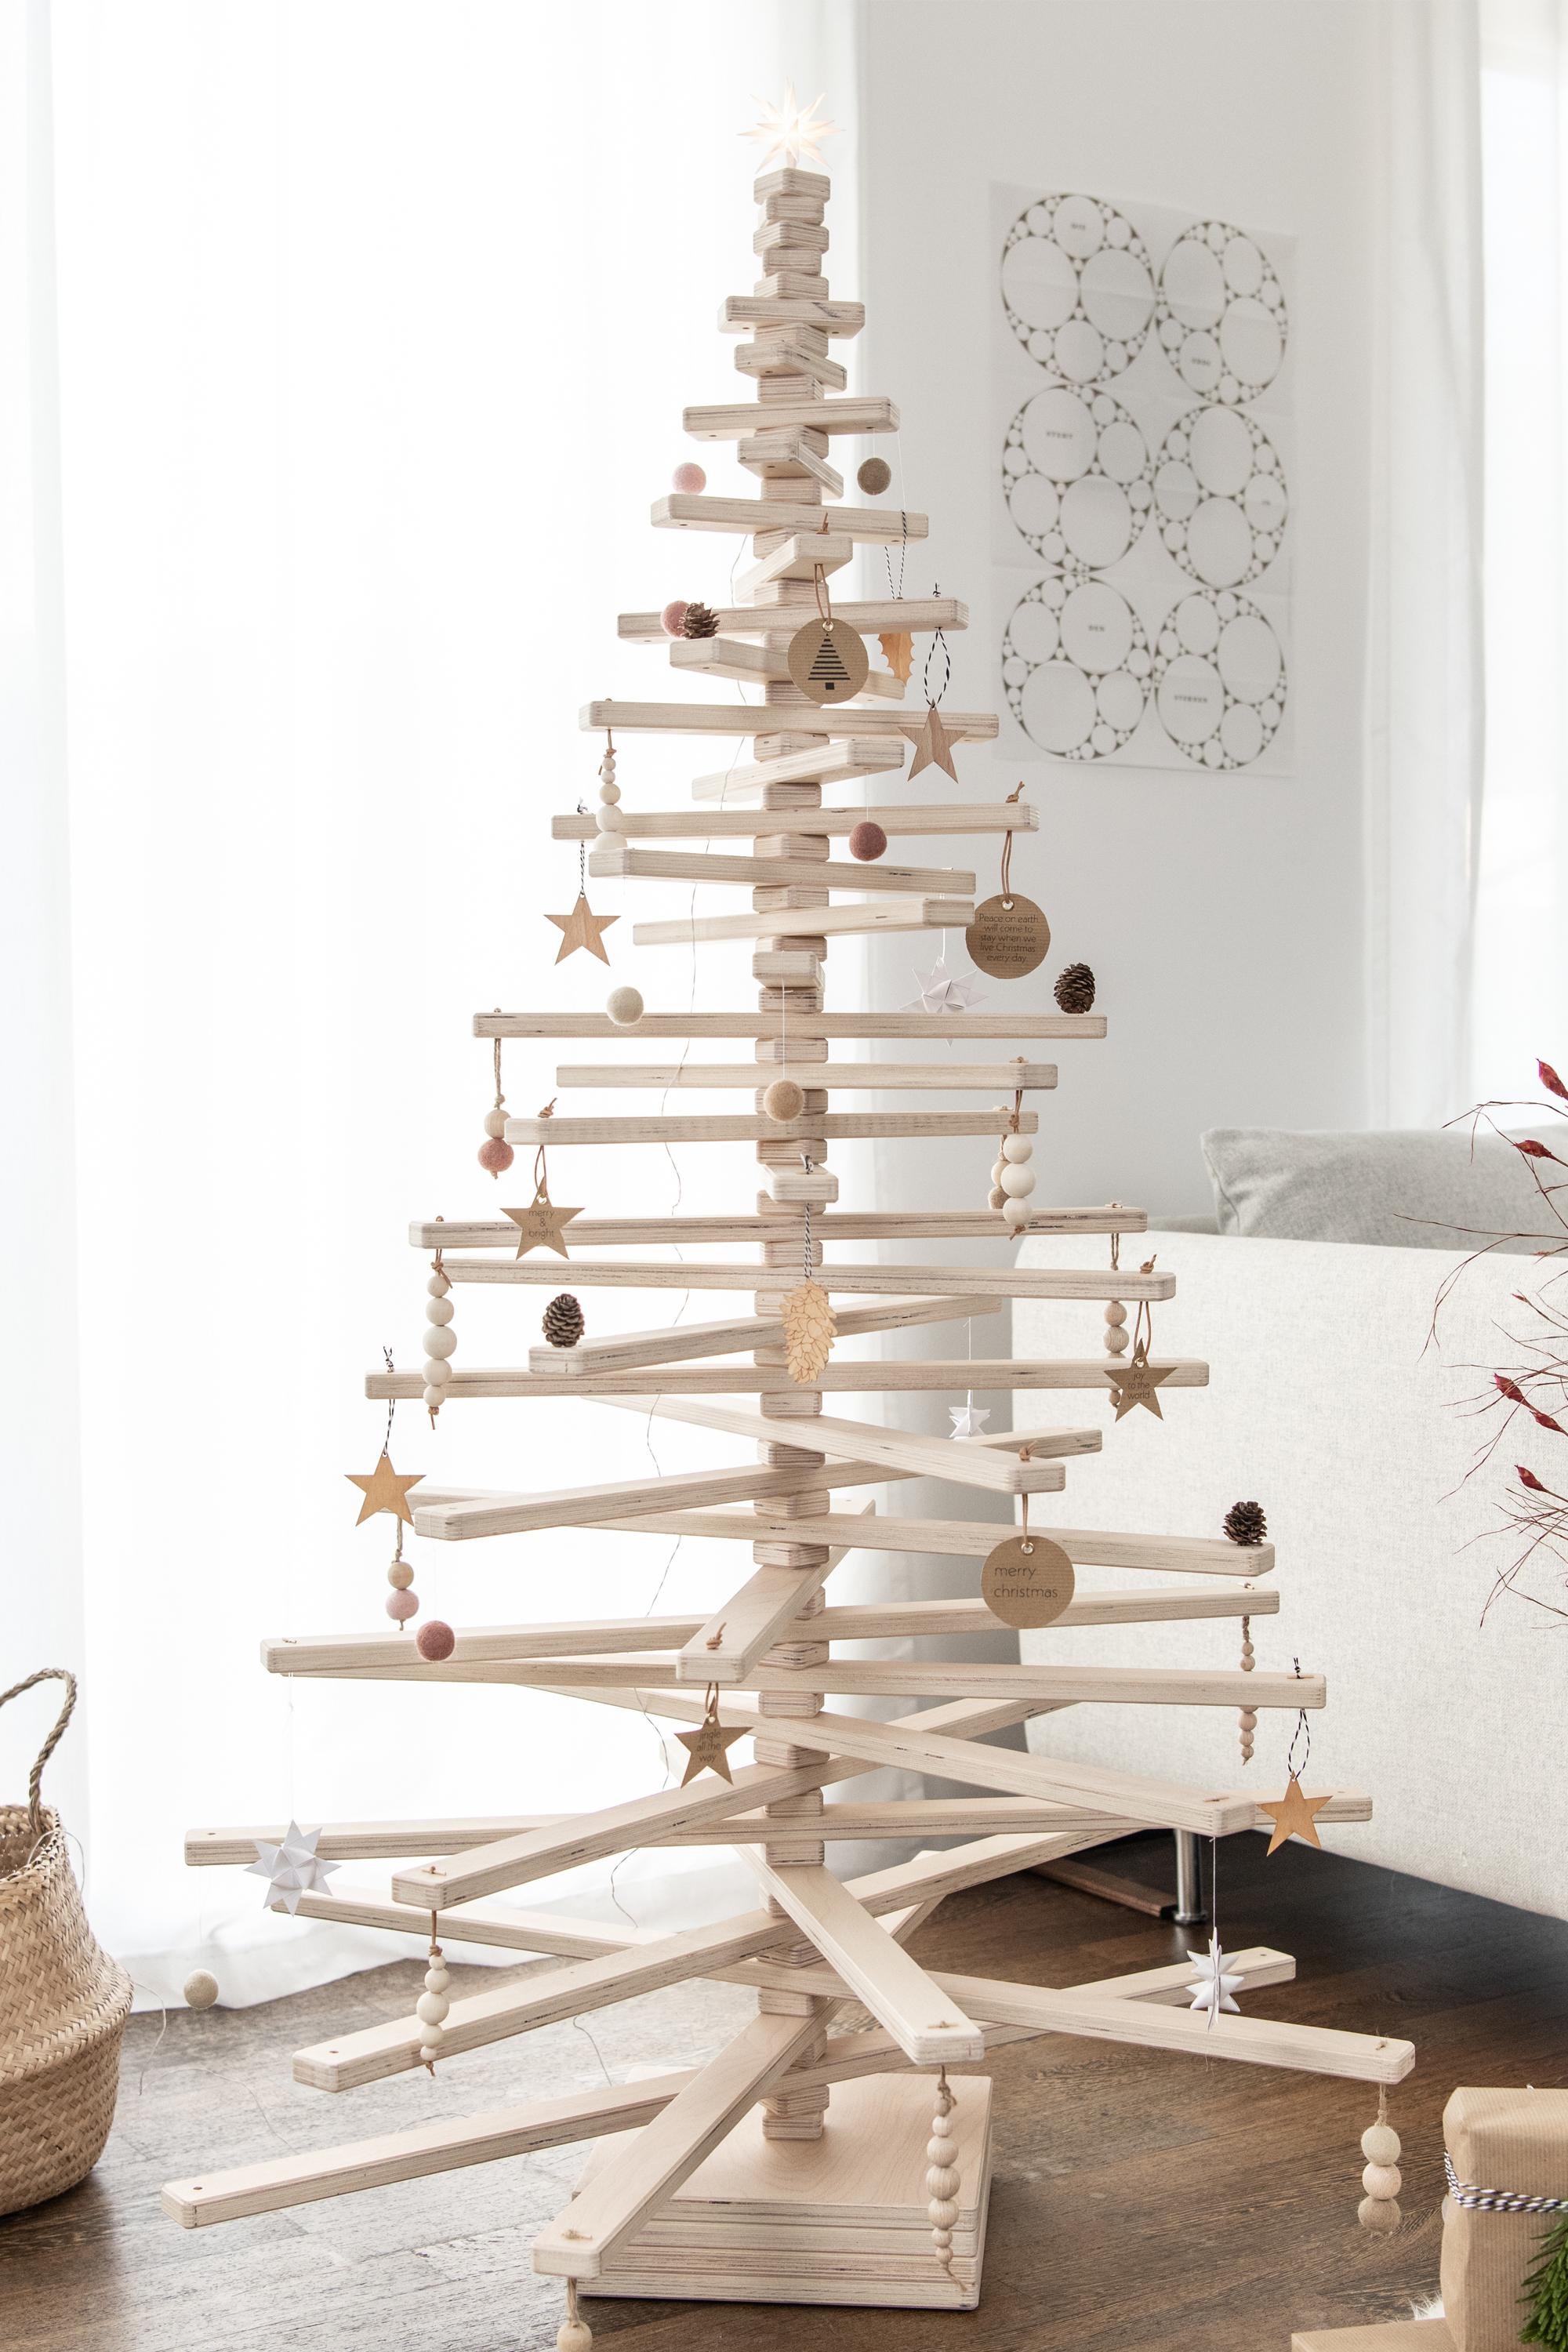 Weihnachtsbaum aus Multiplex... einen schönen 4. Advent für Euch

#weihnachtsbaum #multiplex #moderneweihnachten